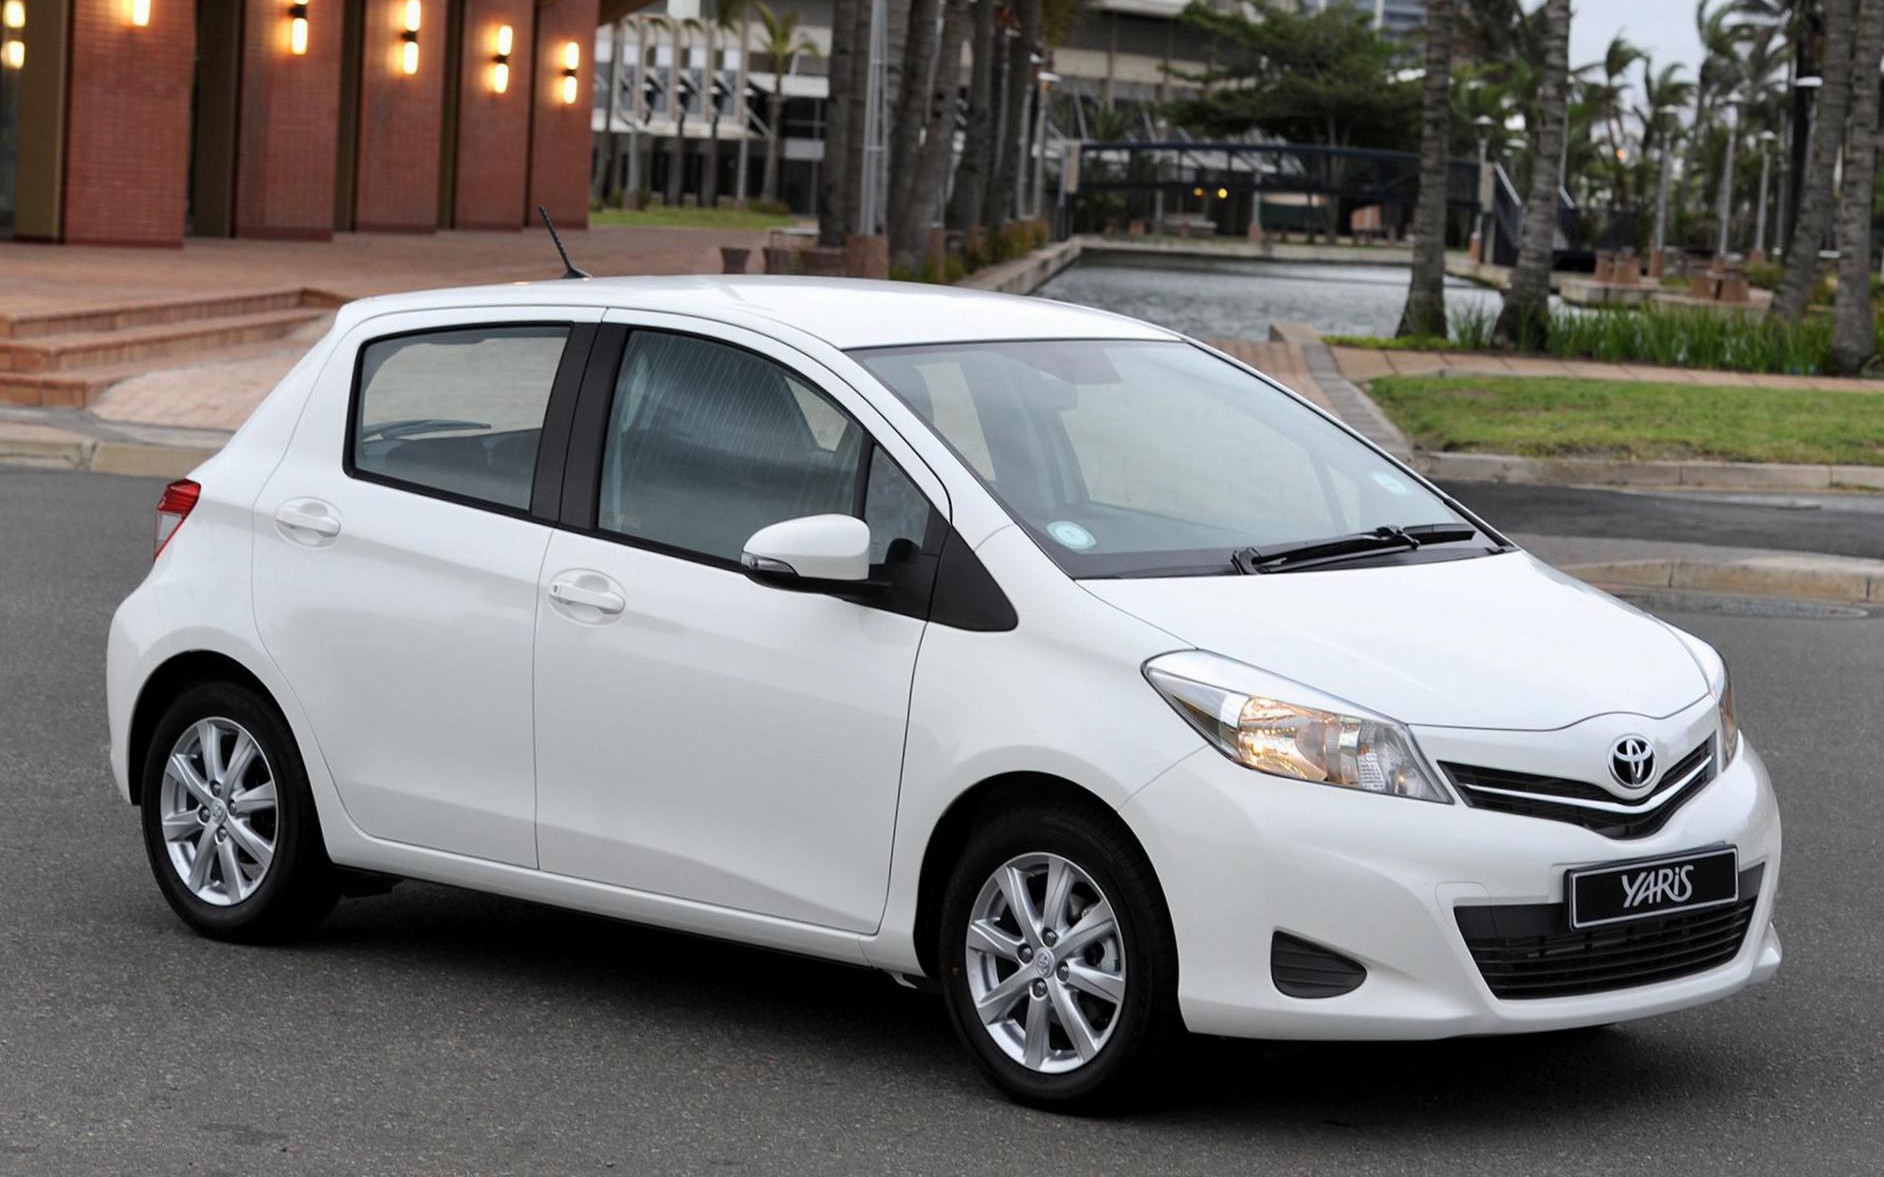 Toyota tiếp tục ngừng sản xuất những mẫu xe trong vụ bê bối 